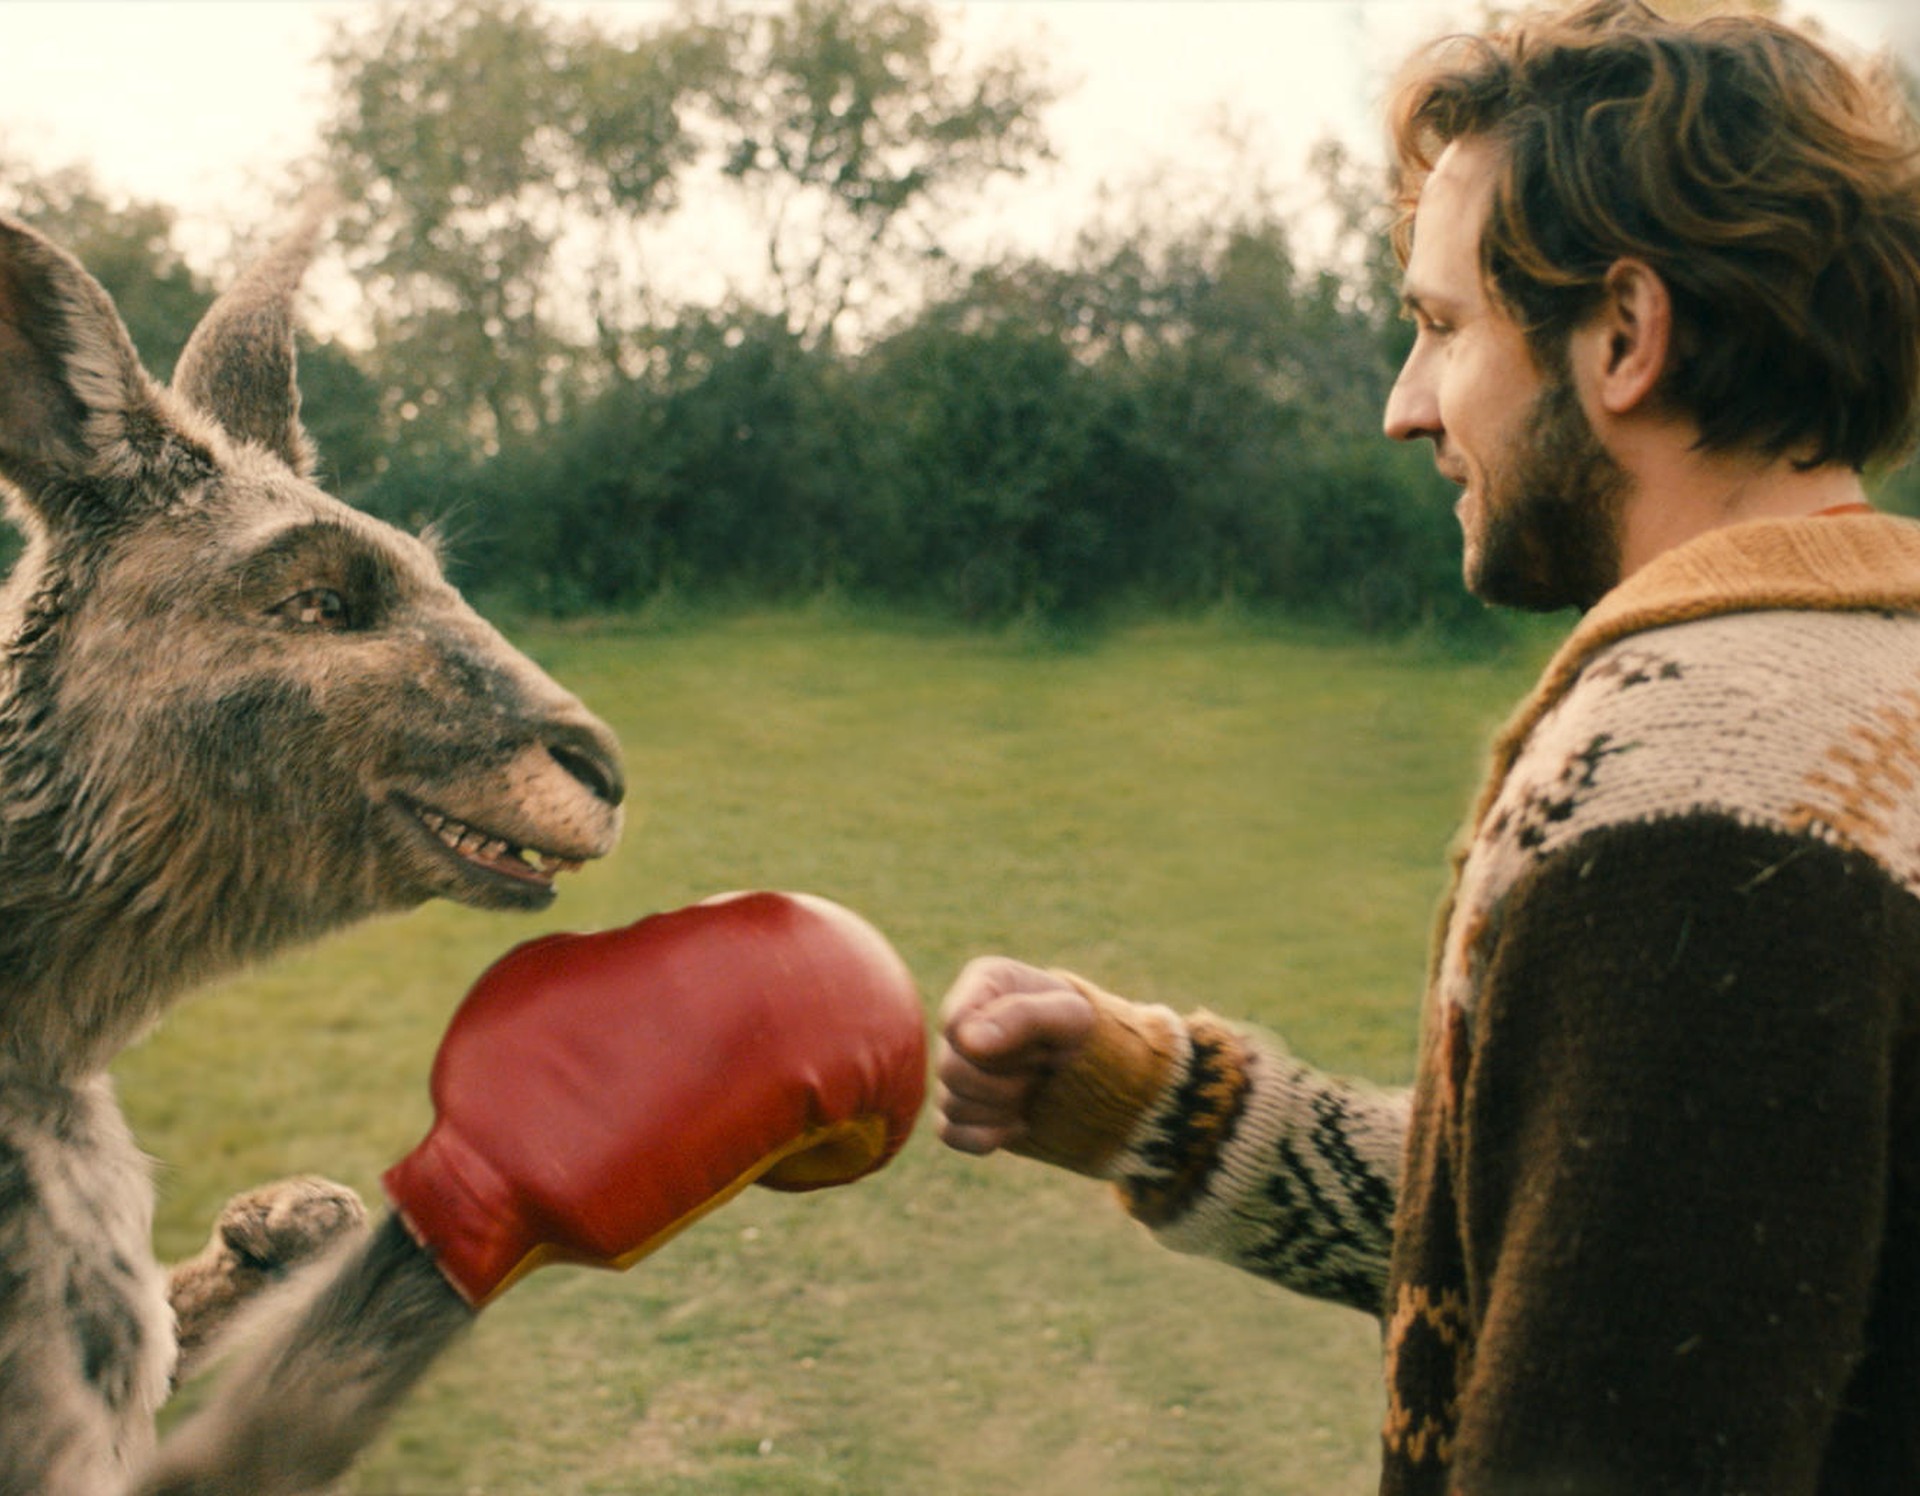 Ein Känguru, das einen roten Boxhandschuh trägt, gibt einem Mann die Faust.